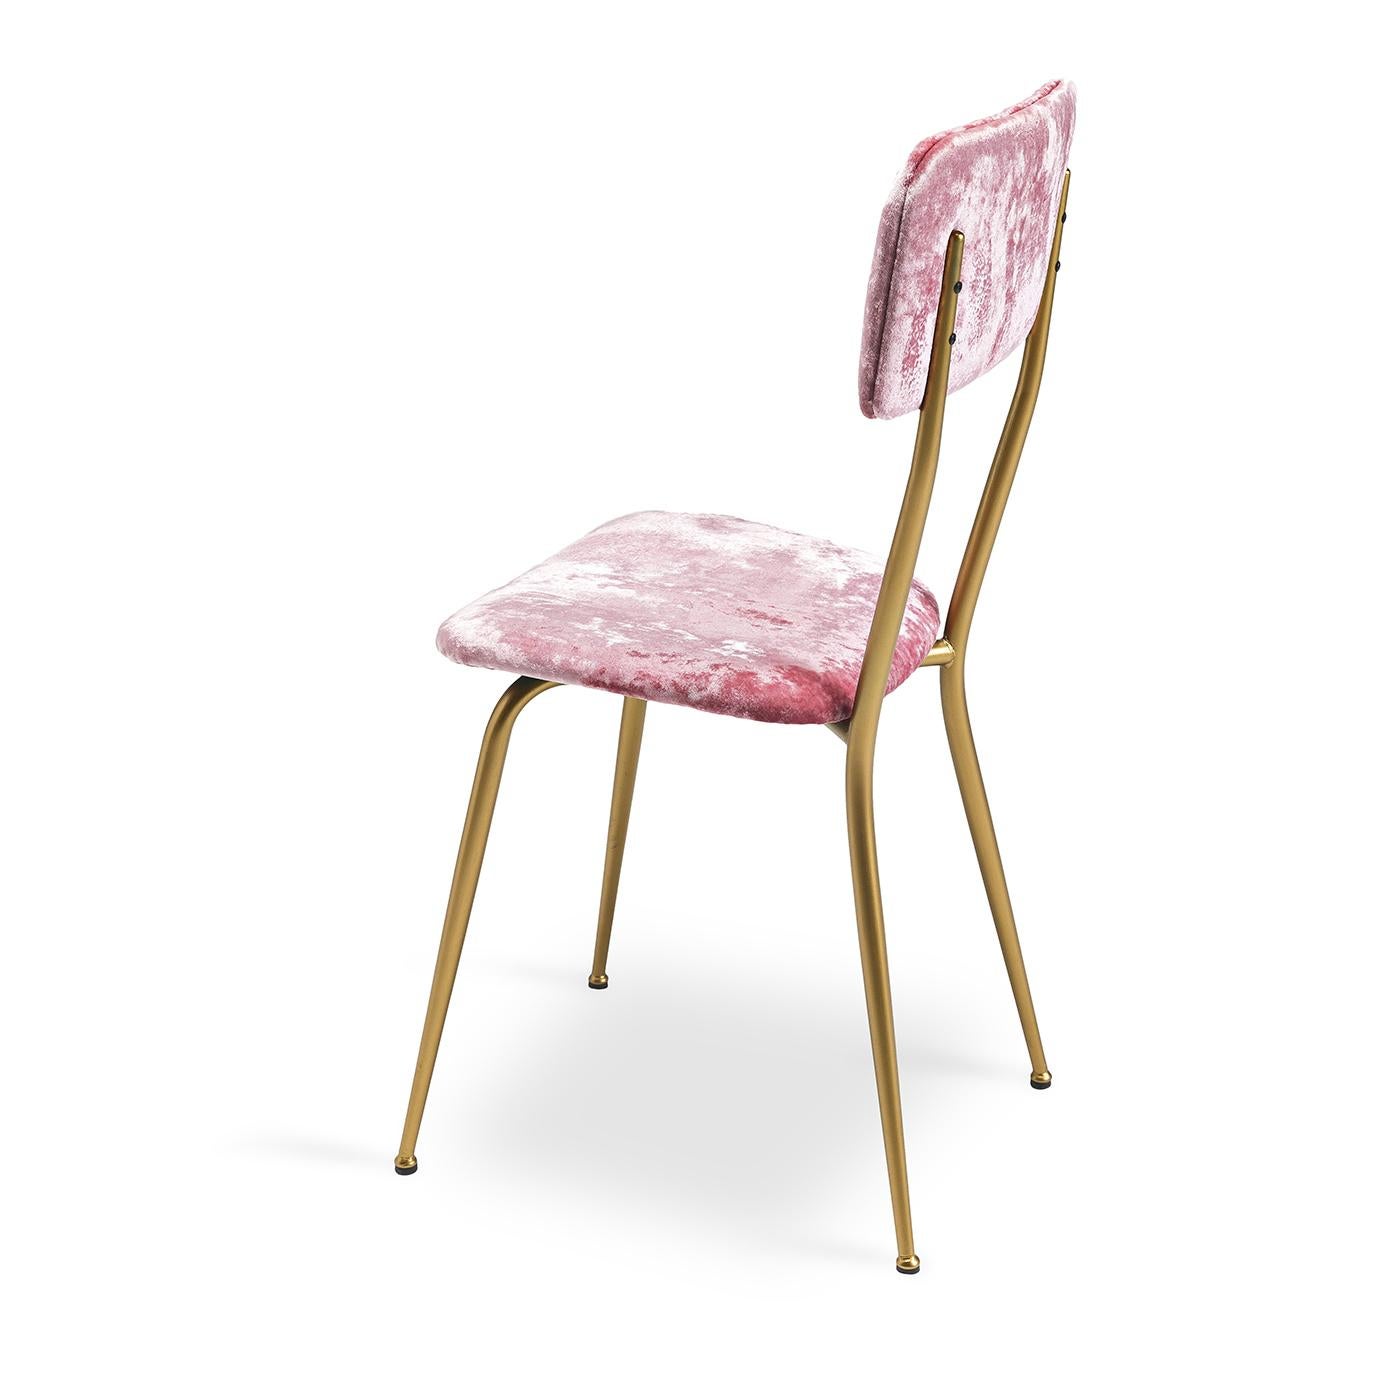 Elegant, raffiniert und unbestreitbar feminin. Der Stuhl Miss Ava 6 zeichnet sich durch seine unwiderstehliche rosa Samtpolsterung aus, die mit einem Gestell aus gebürstetem Messing einen modernen Akzent setzt. Die gepolsterte Sitzfläche und